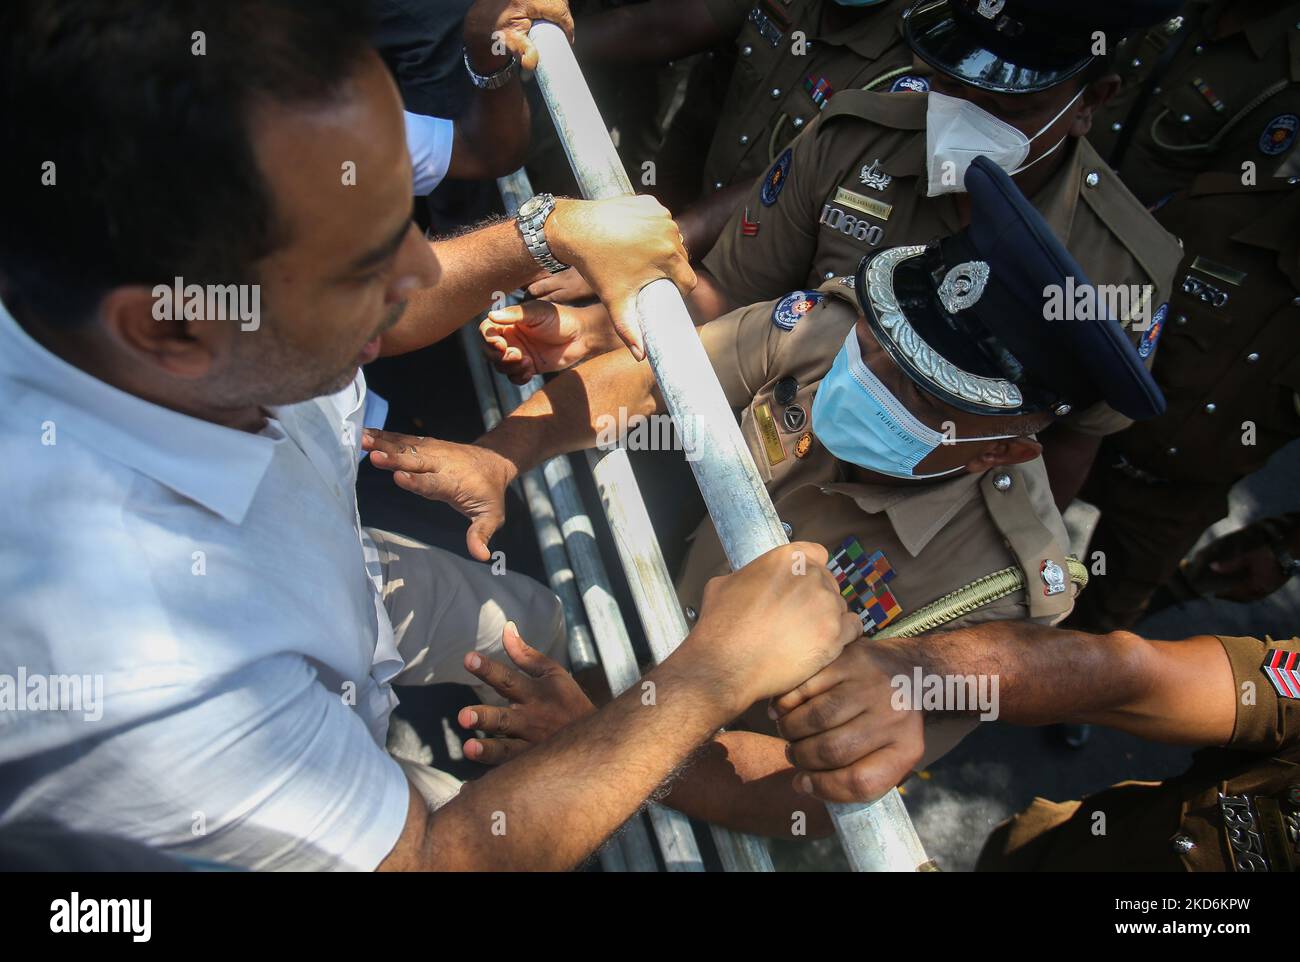 Il principale leader dell'opposizione dello Sri Lanka Sajith Premadasa e altri membri del Samagi Jana Balawewawa hanno organizzato una marcia di protesta a Colombo il 3 aprile 2022, contro l'imposizione di un coprifuoco nazionale. Le proteste contro la crescente crisi economica dell'isola sono state bloccate dalle forze di sicurezza. (Foto di Pradeep Dambarage/NurPhoto) Foto Stock